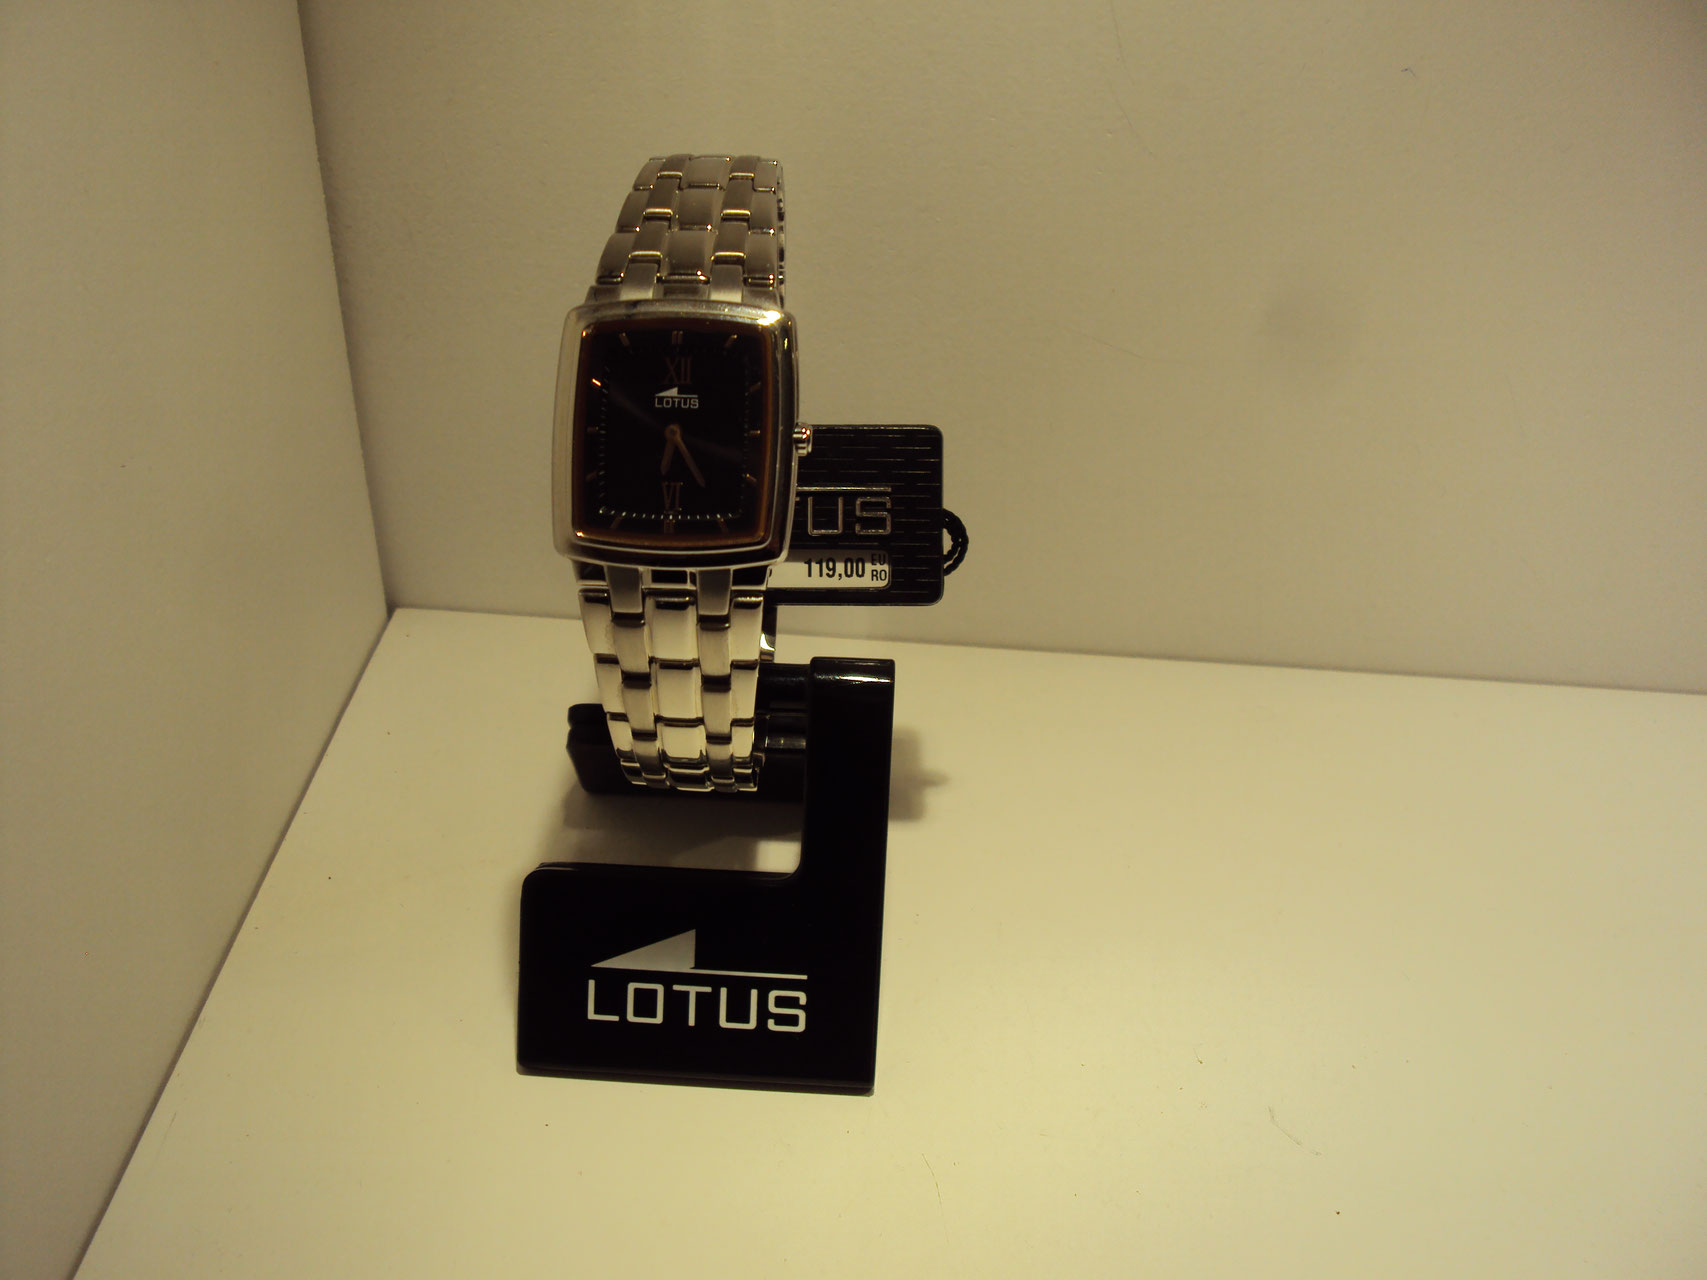 Reloj Lotus de mujer muy planito con fondo oscuro y cobrizo.119€